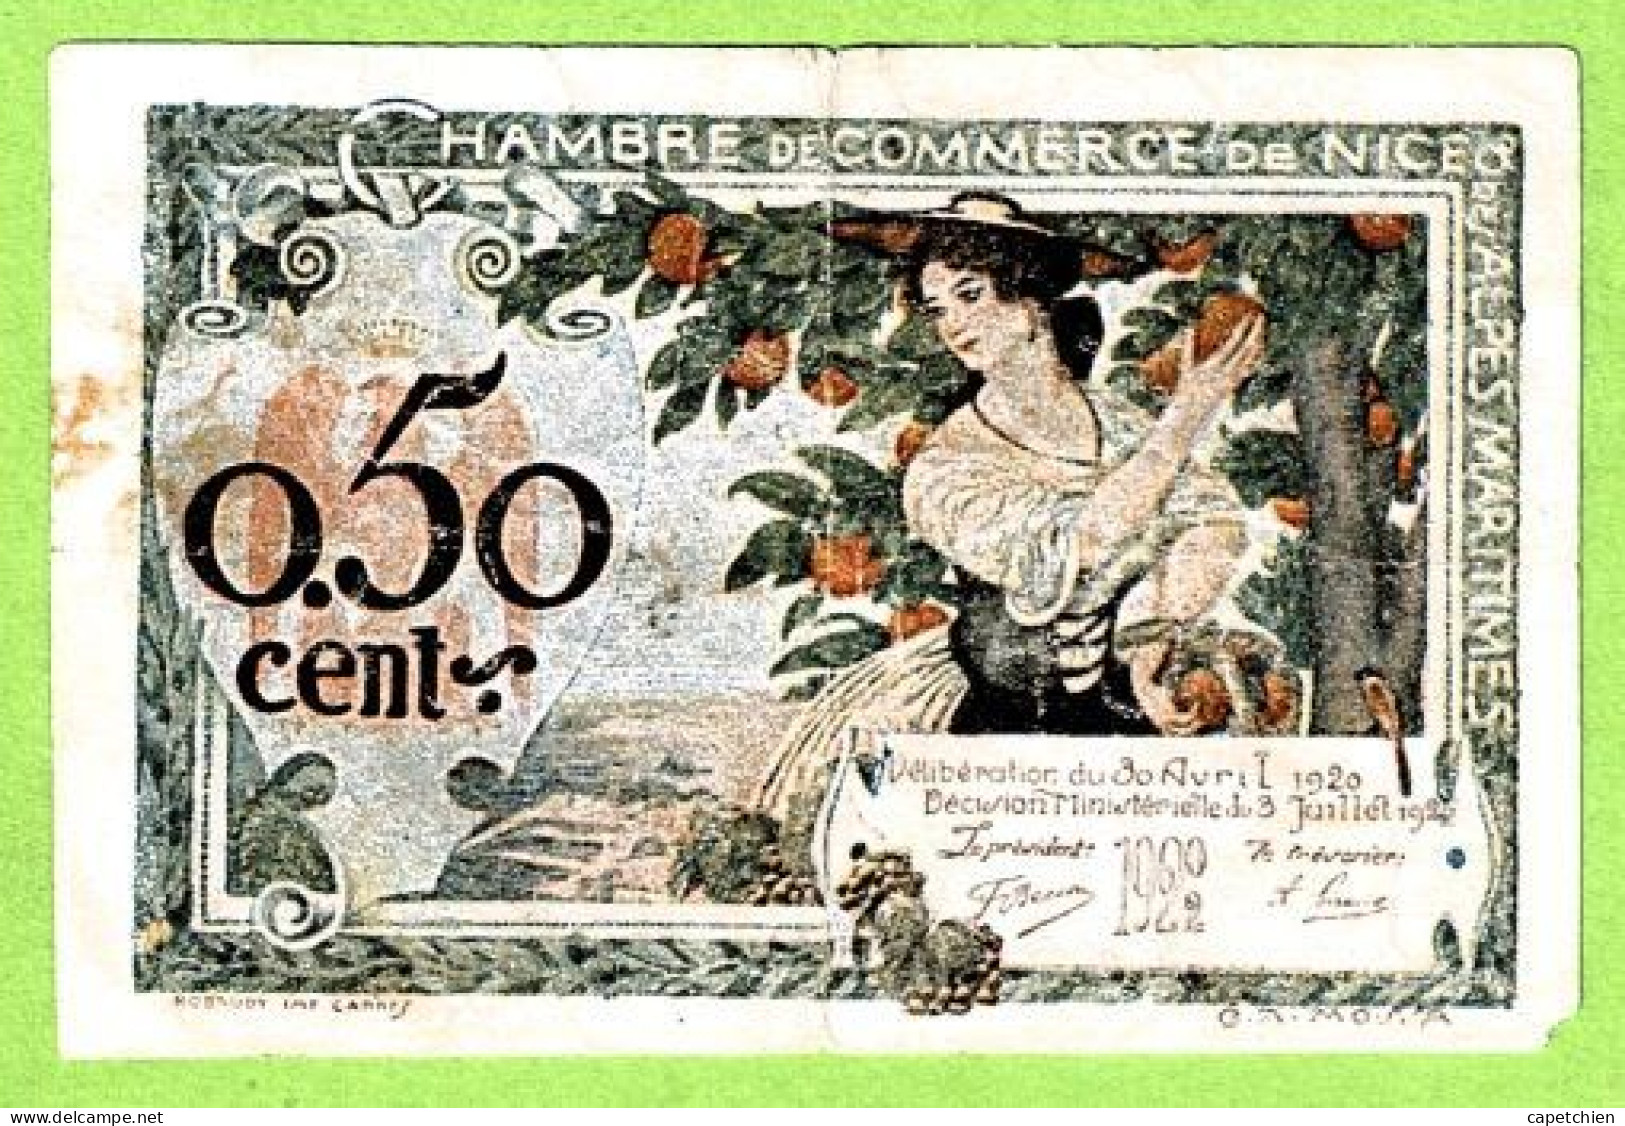 FRANCE / CHAMBRE De COMMERCE / NICE / 50 CENTIMES / 30 AVRIL 1920 / N° 0.014.906 / SERIE 314 - Chambre De Commerce